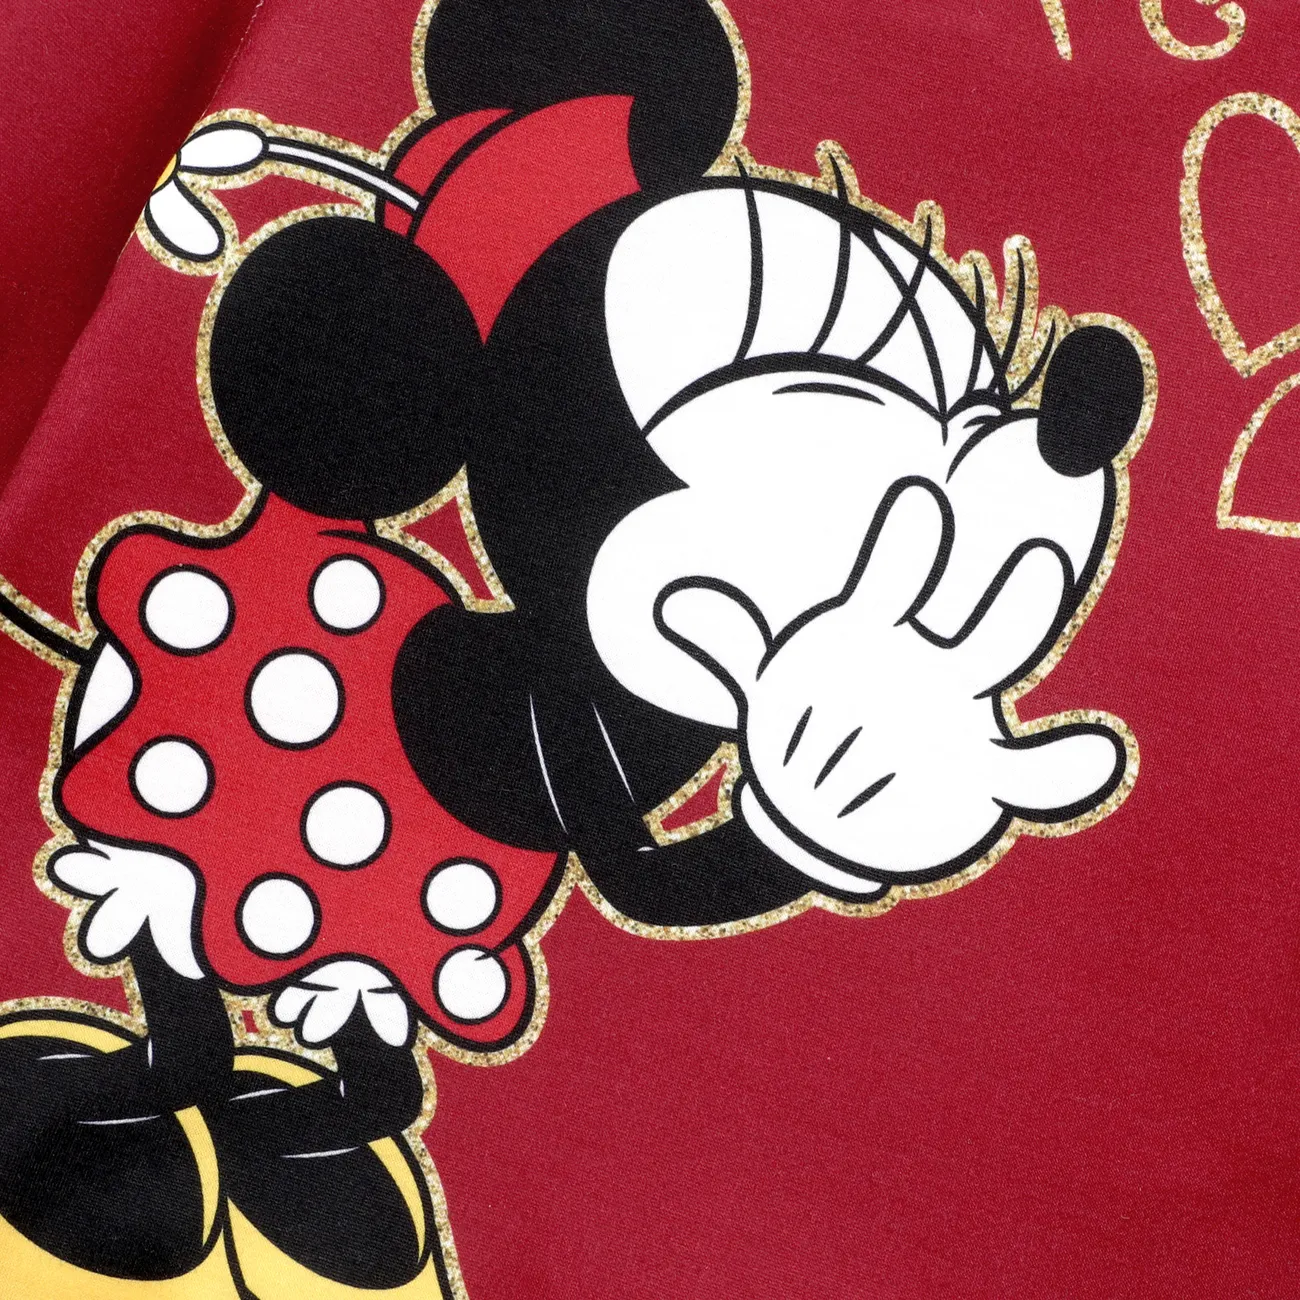 Disney Mickey and Friends Día de la Madre 2 unidades Chica Volantes Infantil Conjuntos vino rojo big image 1